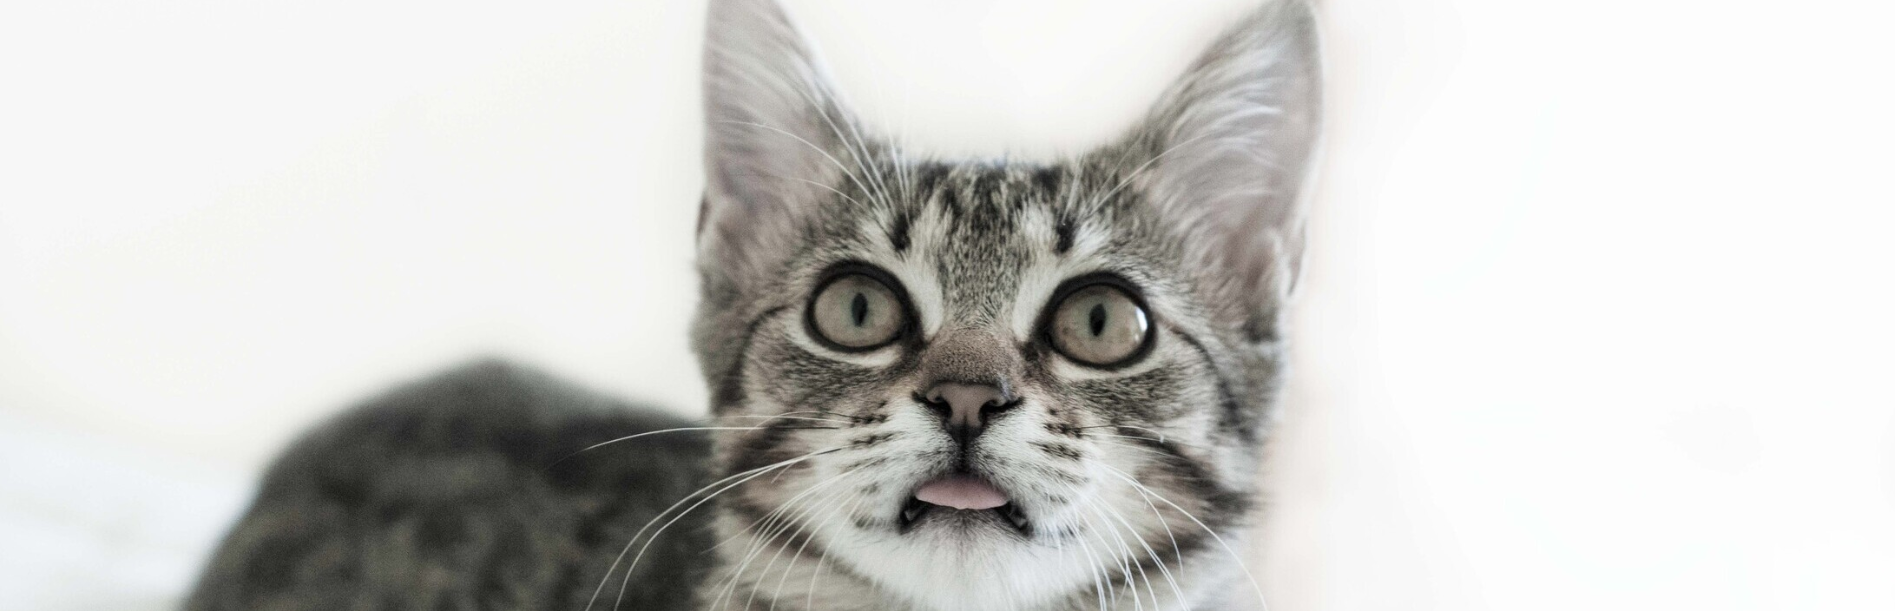 fekete-fehér kép cirmos cicáról